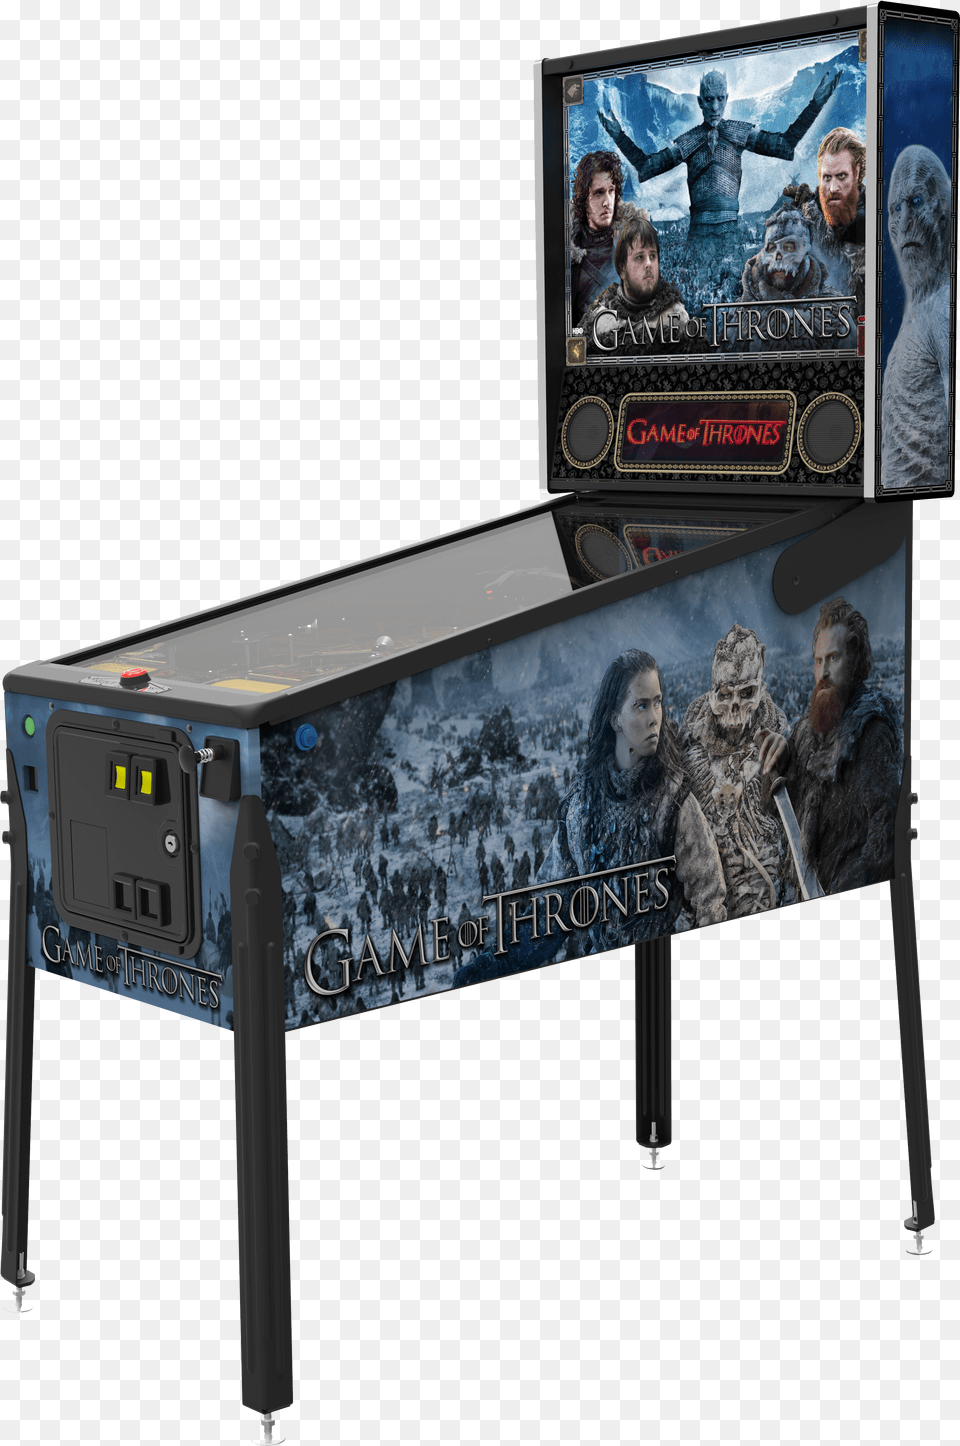 Game Of Thrones Premium Game Of Thrones Premium Pinball Machine Png